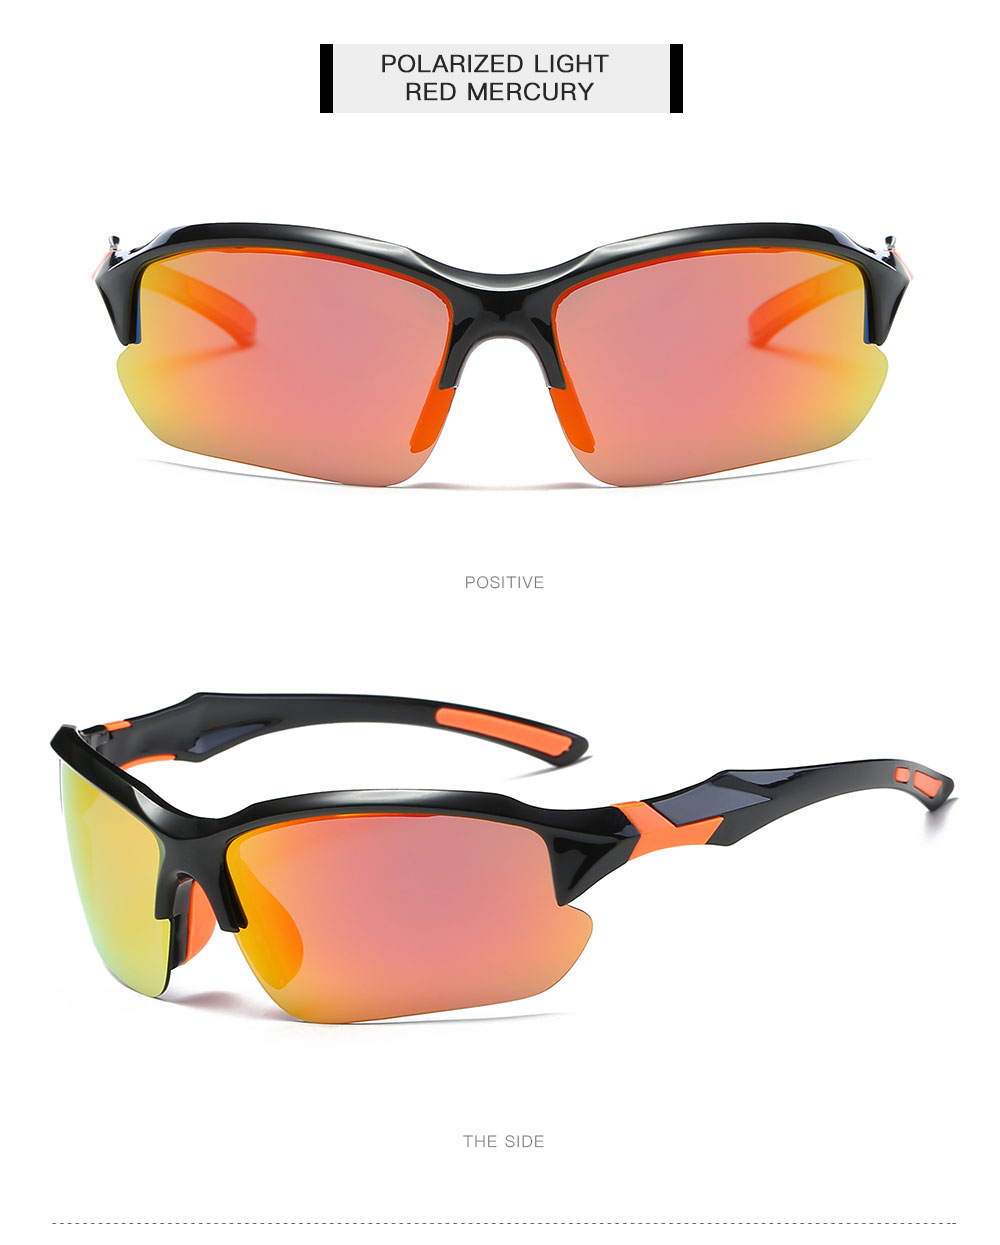 Sports Sunglasses, Cycling Sunglass, Fishing Sunglasses, Golf Sunglasses Wholesale China